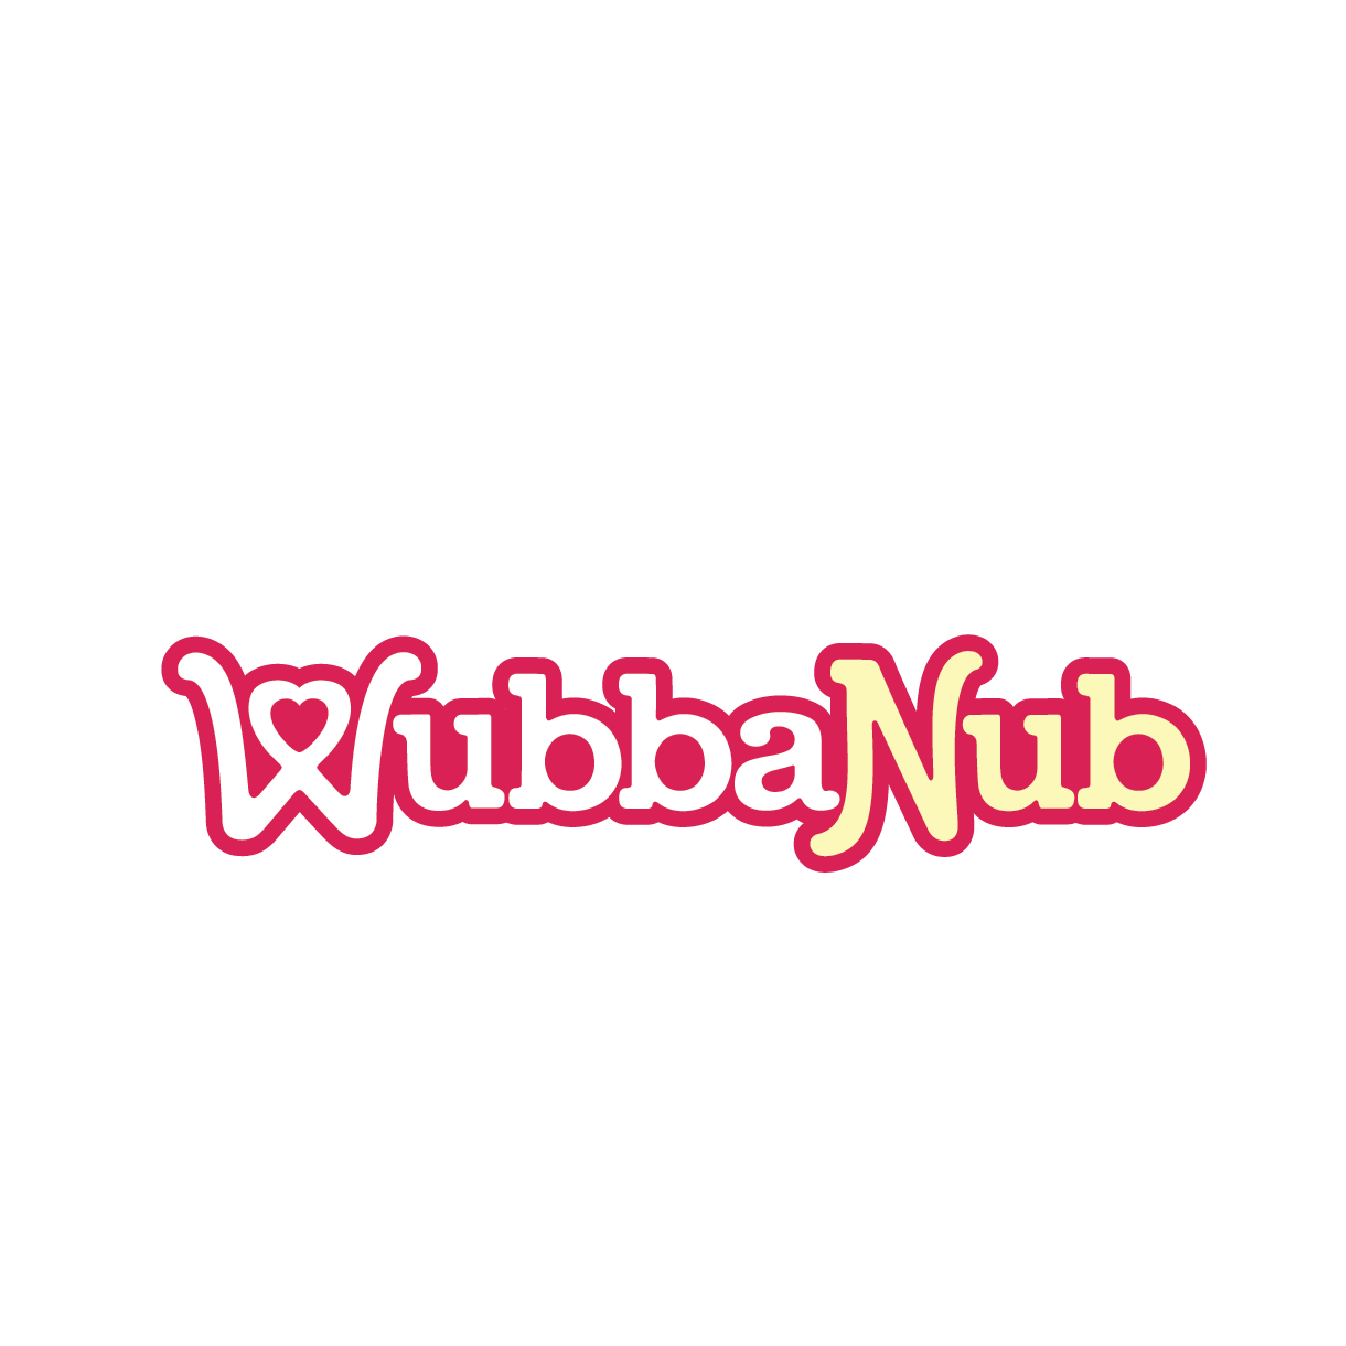 Client logos_WubbaNub.png